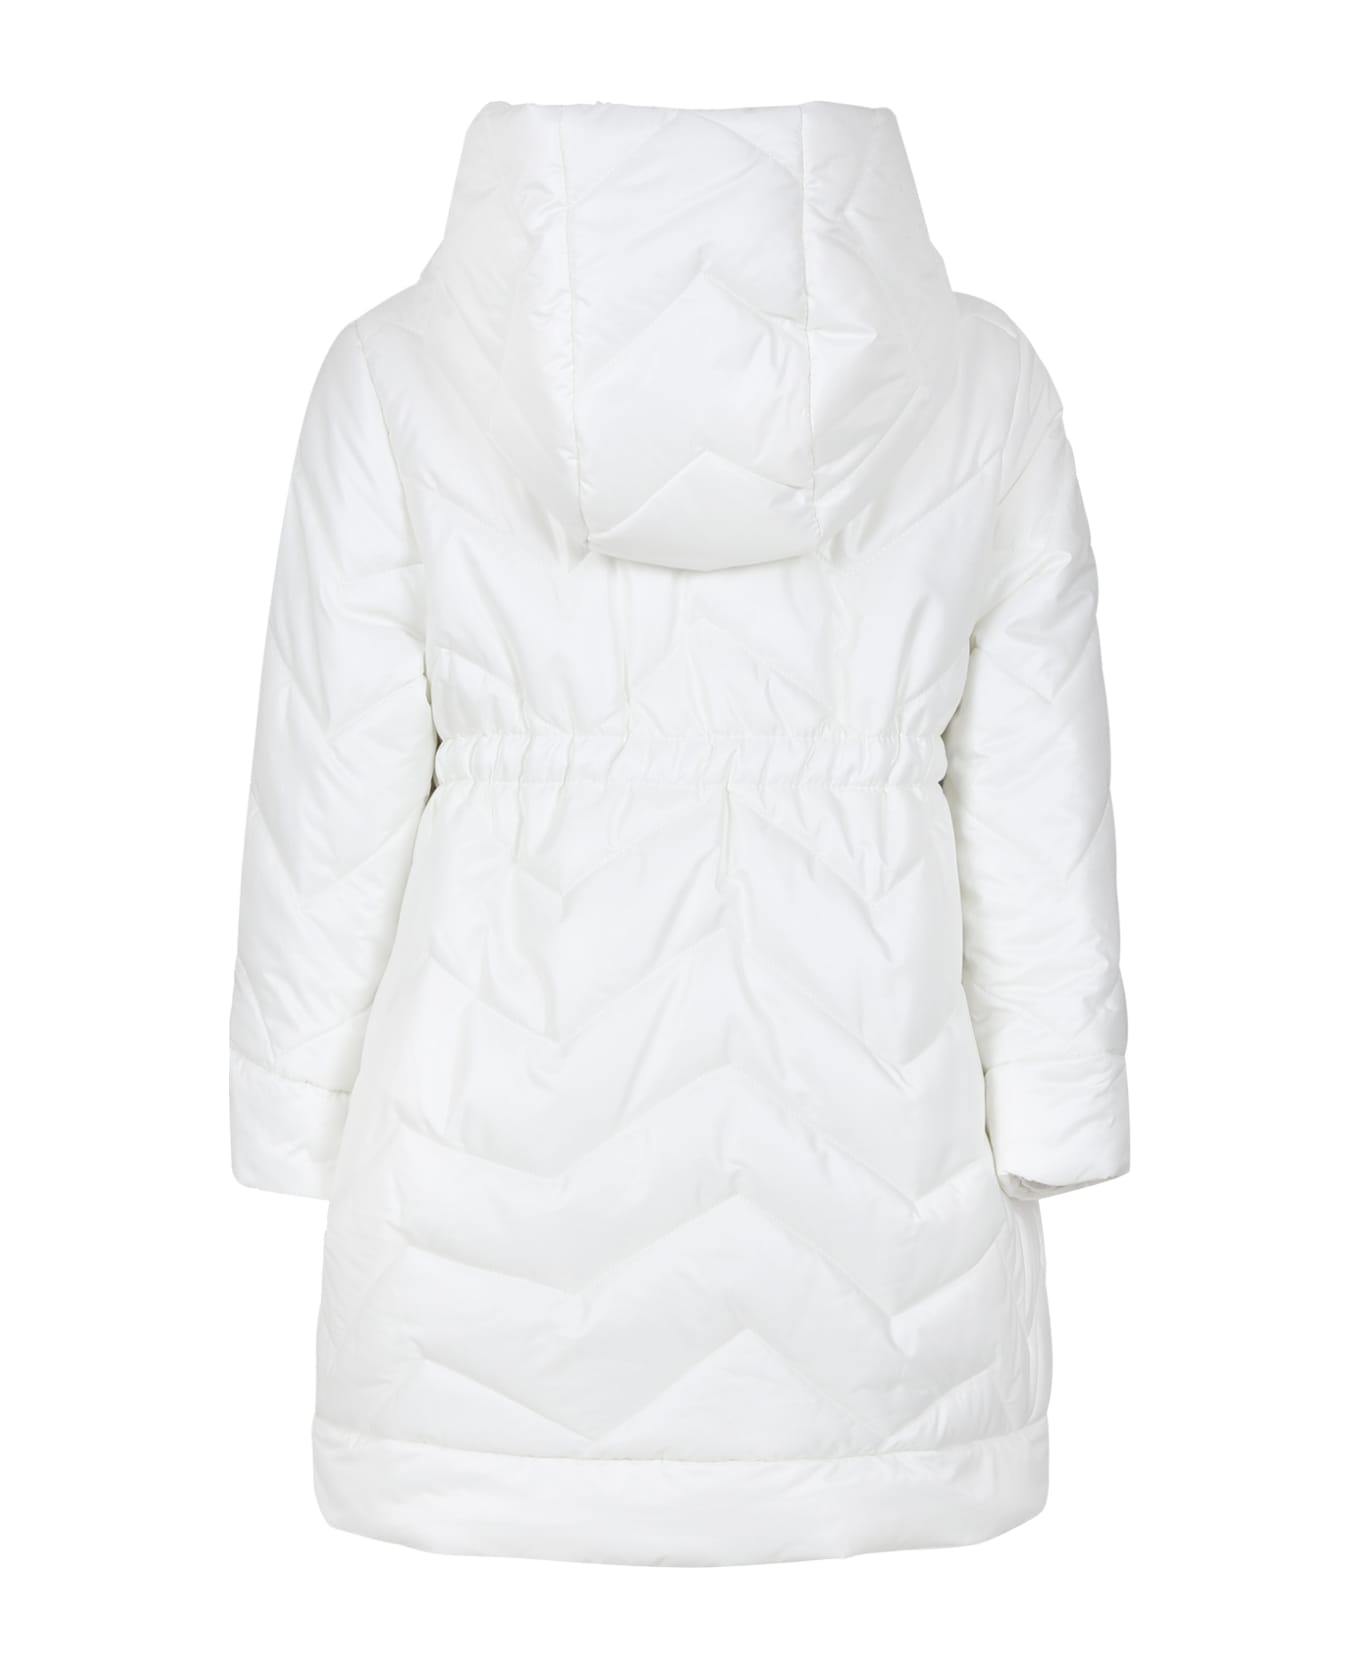 Monnalisa White Down Jacket For Girl With Logo - White